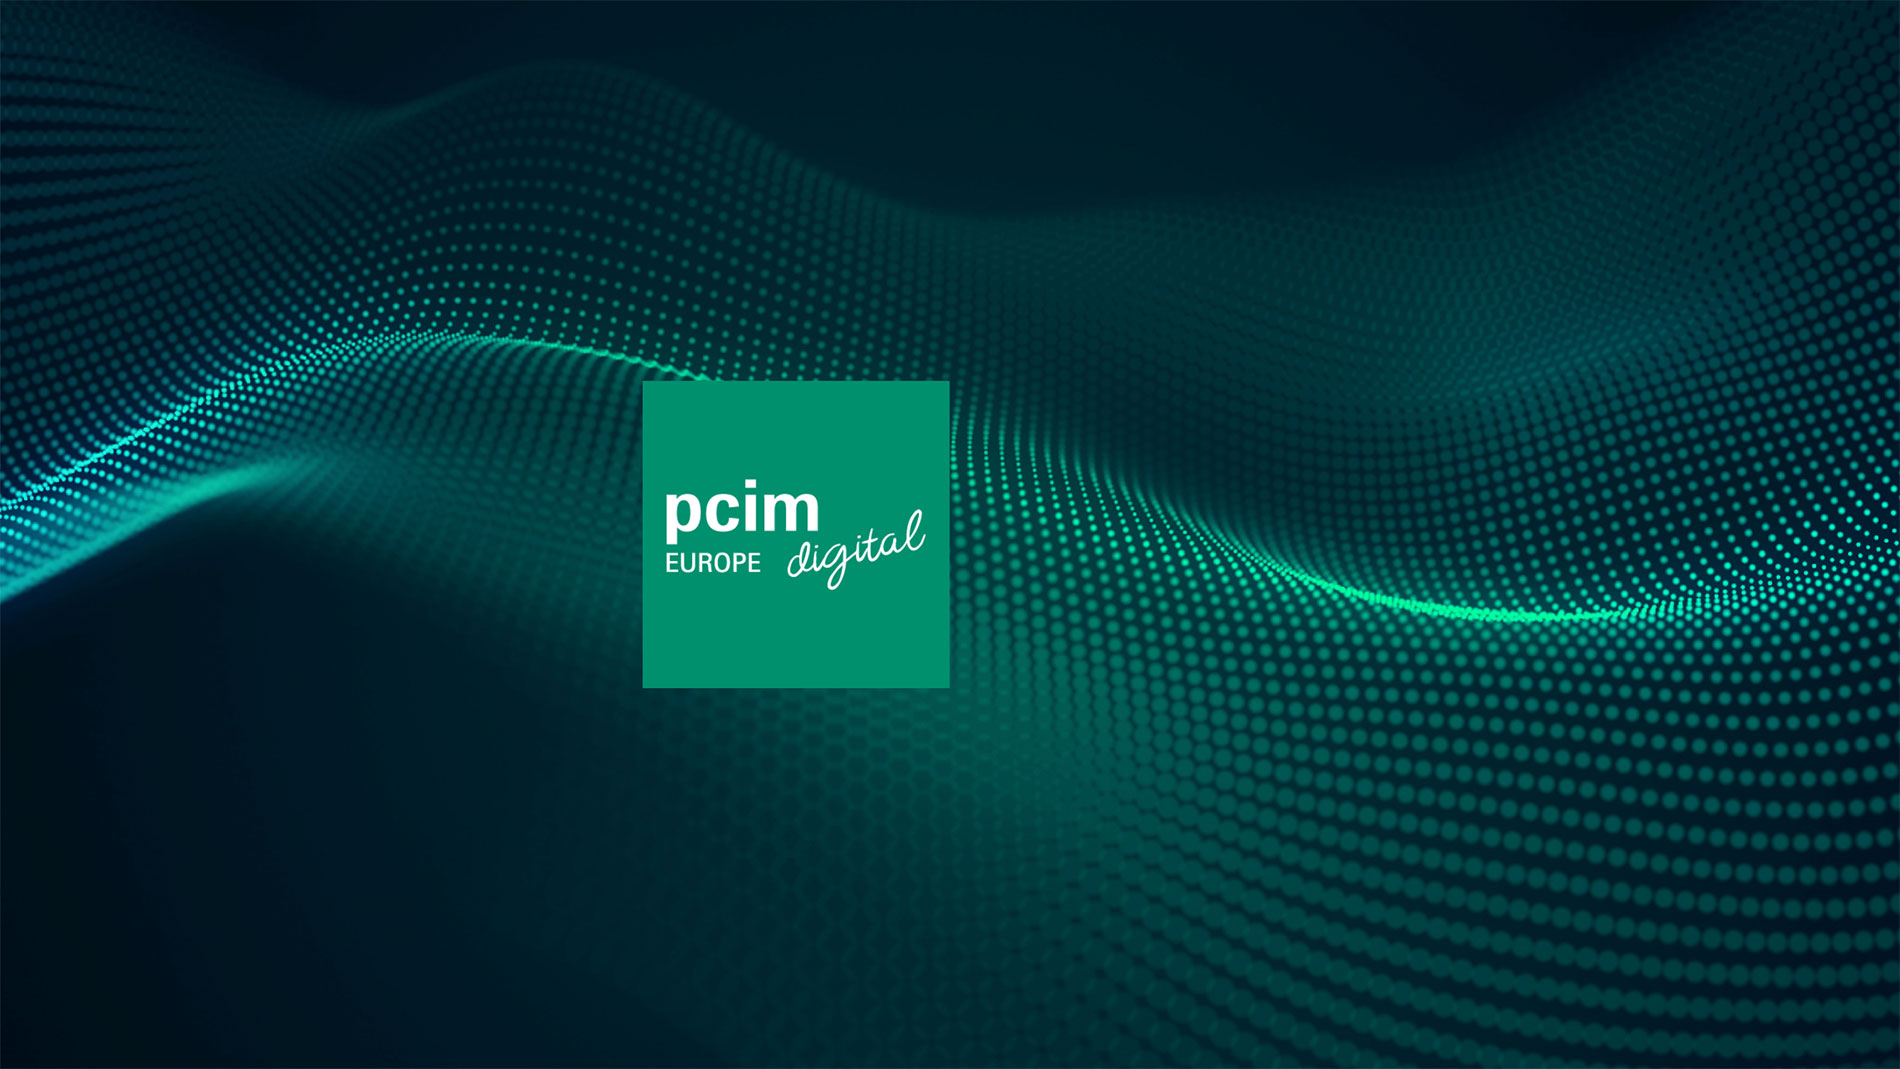 PCIM Europe digital